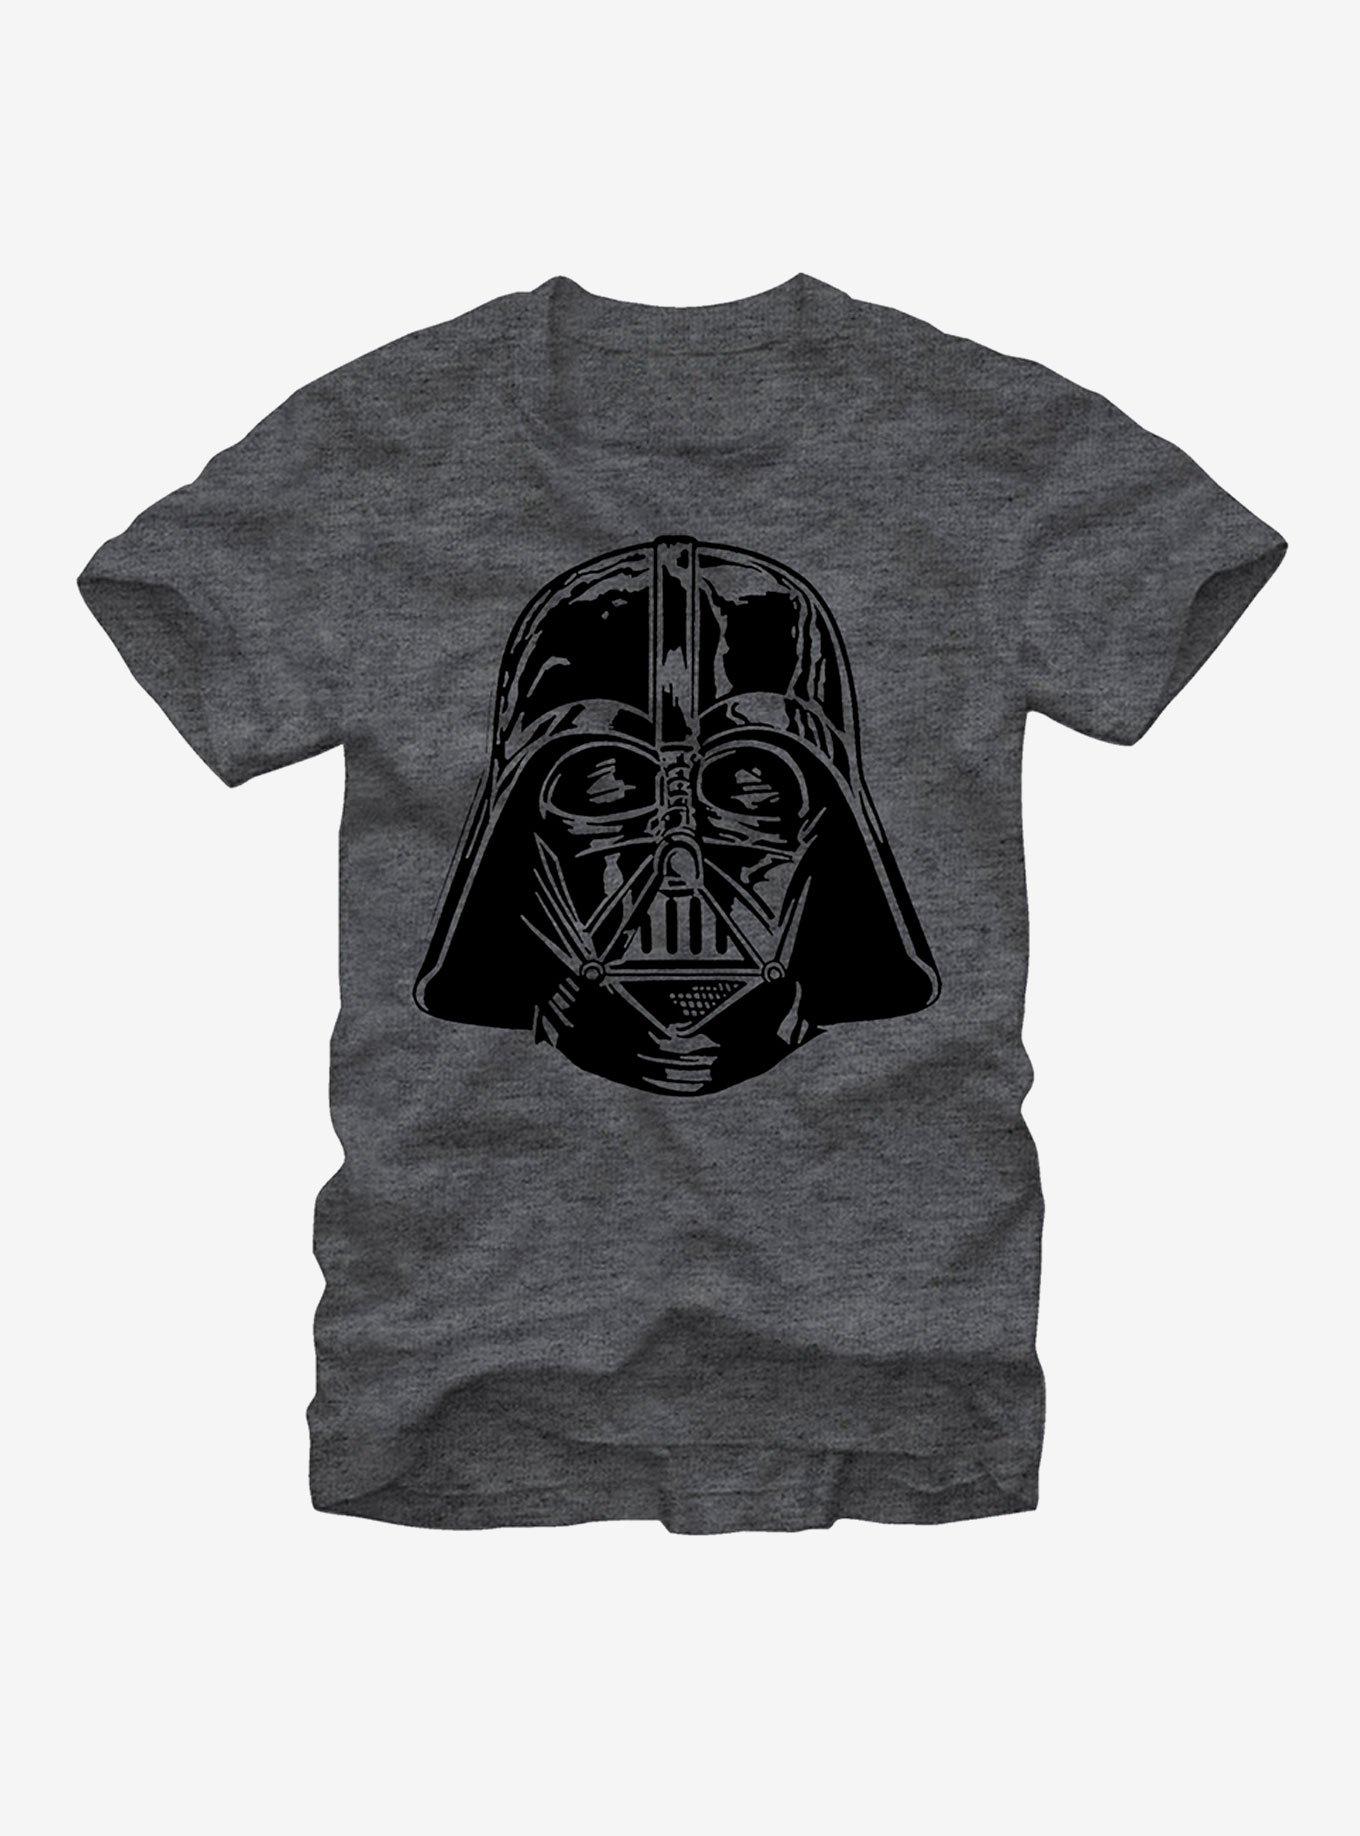 Star Wars Darth Vader Helmet T-Shirt